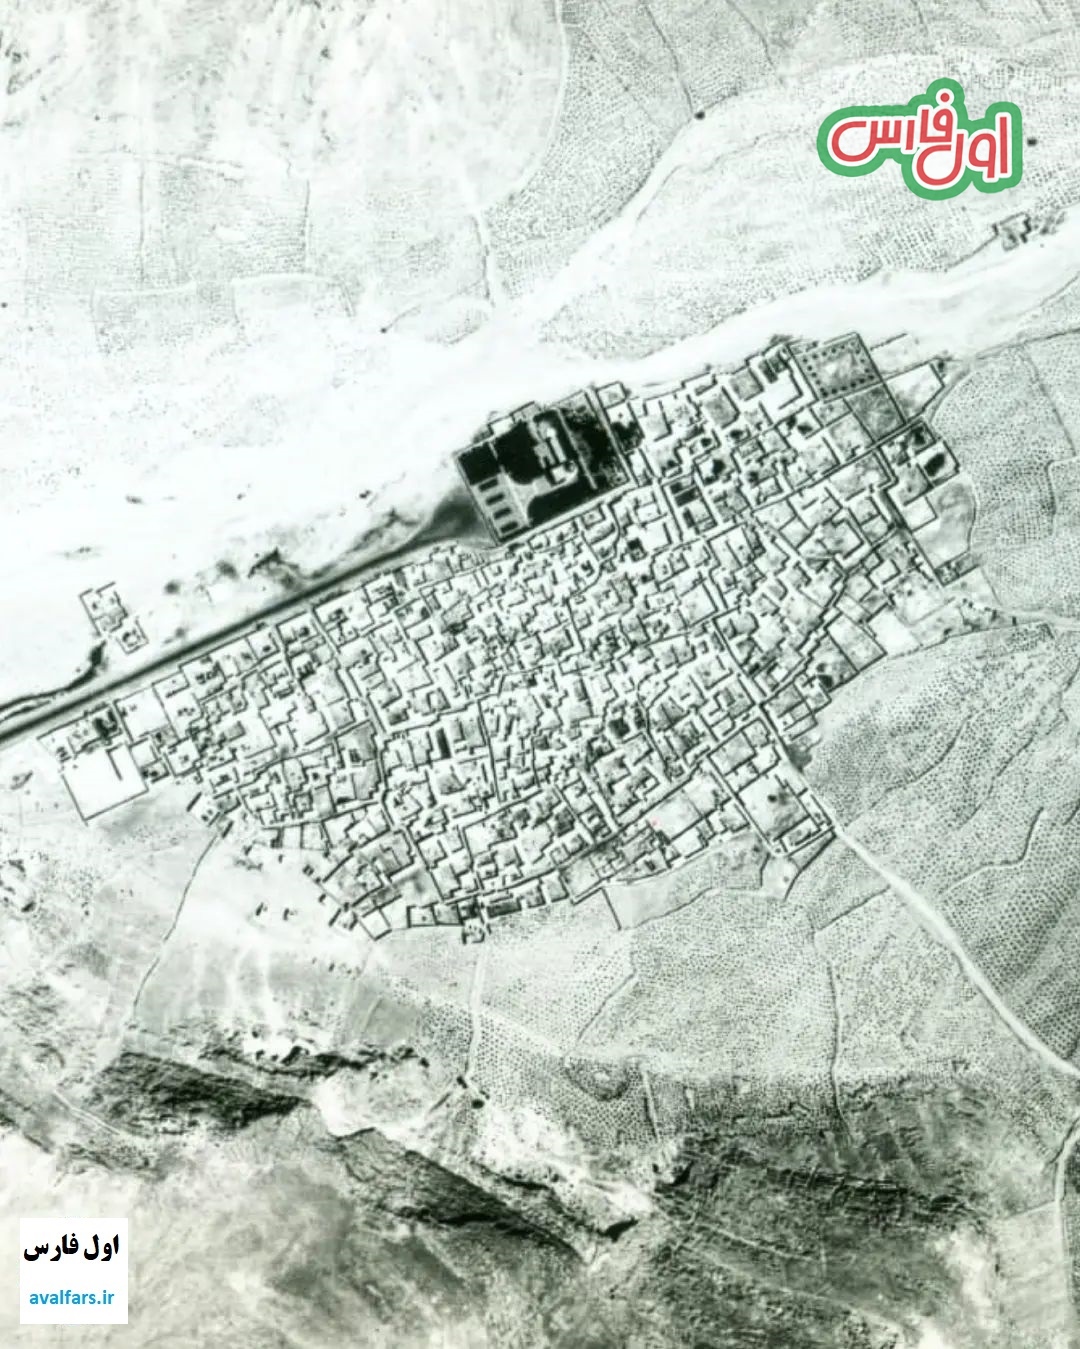 عکس هوایی دیده نشده «محله سعدی» شیراز در سال ۱۳۳۵